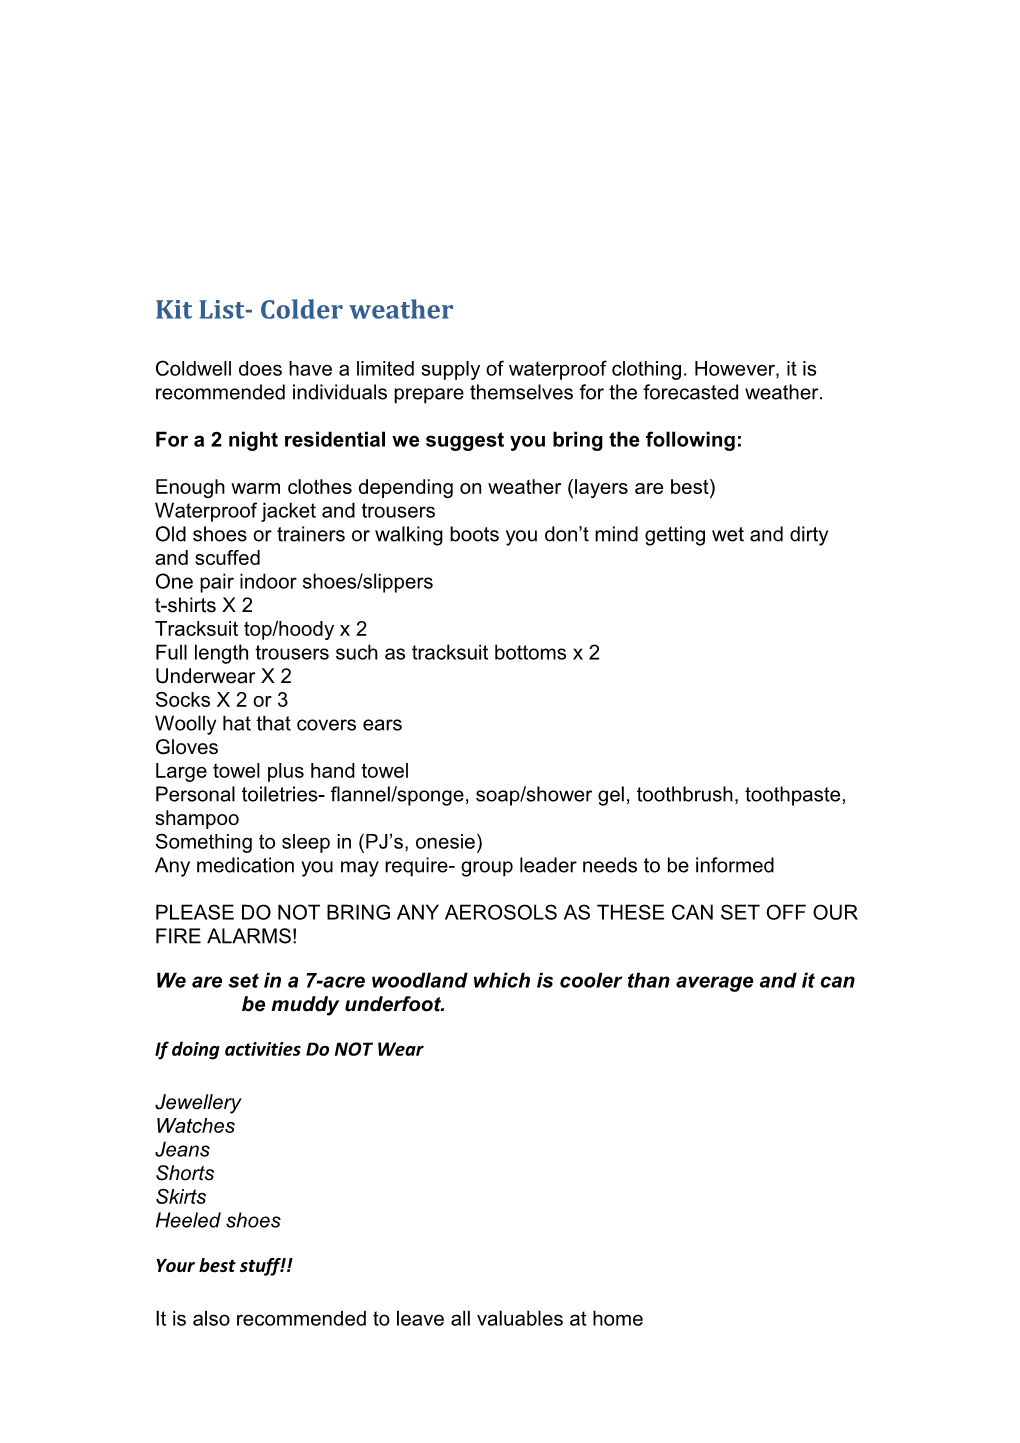 Kit List- Colder Weather